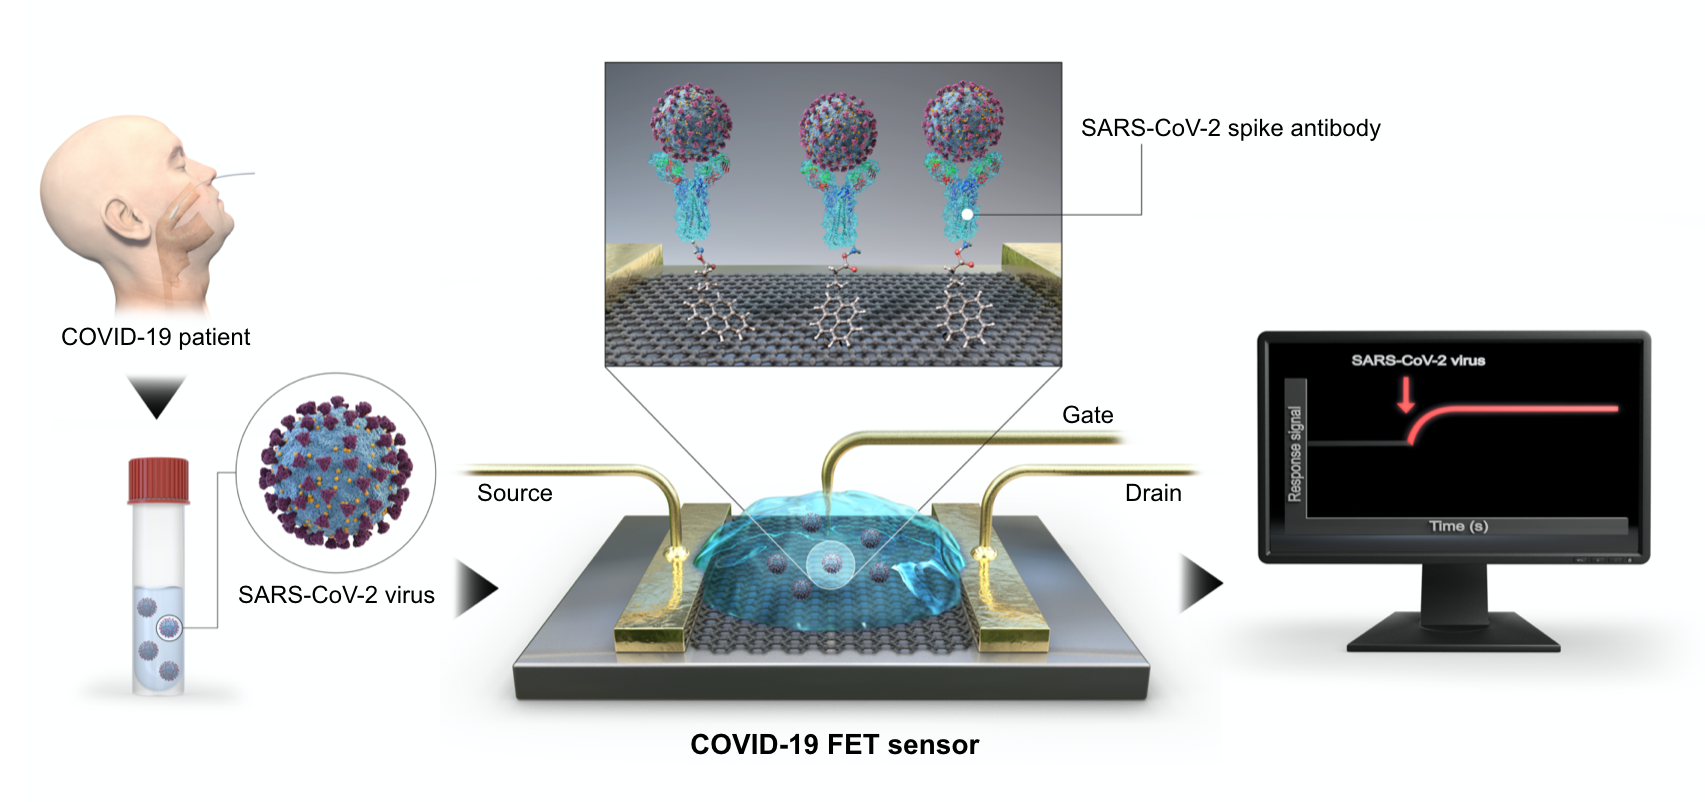 환자에서 채취한 검체를 바이오센서(COVID-19 FET sensor)에 떨어뜨려
    코로나19 바이러스 감염여부를 전기적인 신호로 확인할 수 있다.